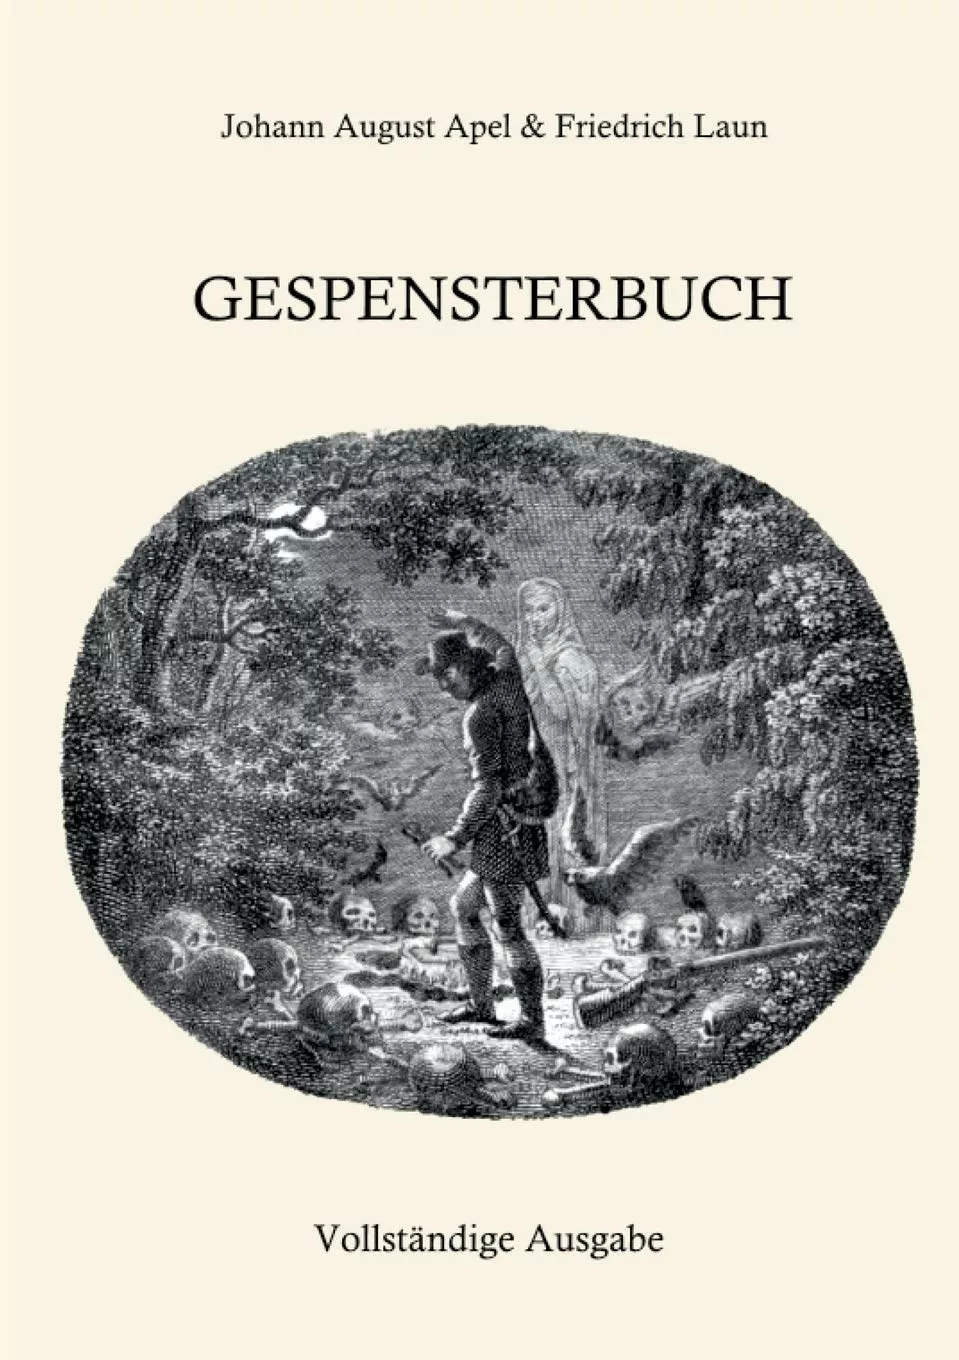 Dark German Folklore - Das Gespensterbuch